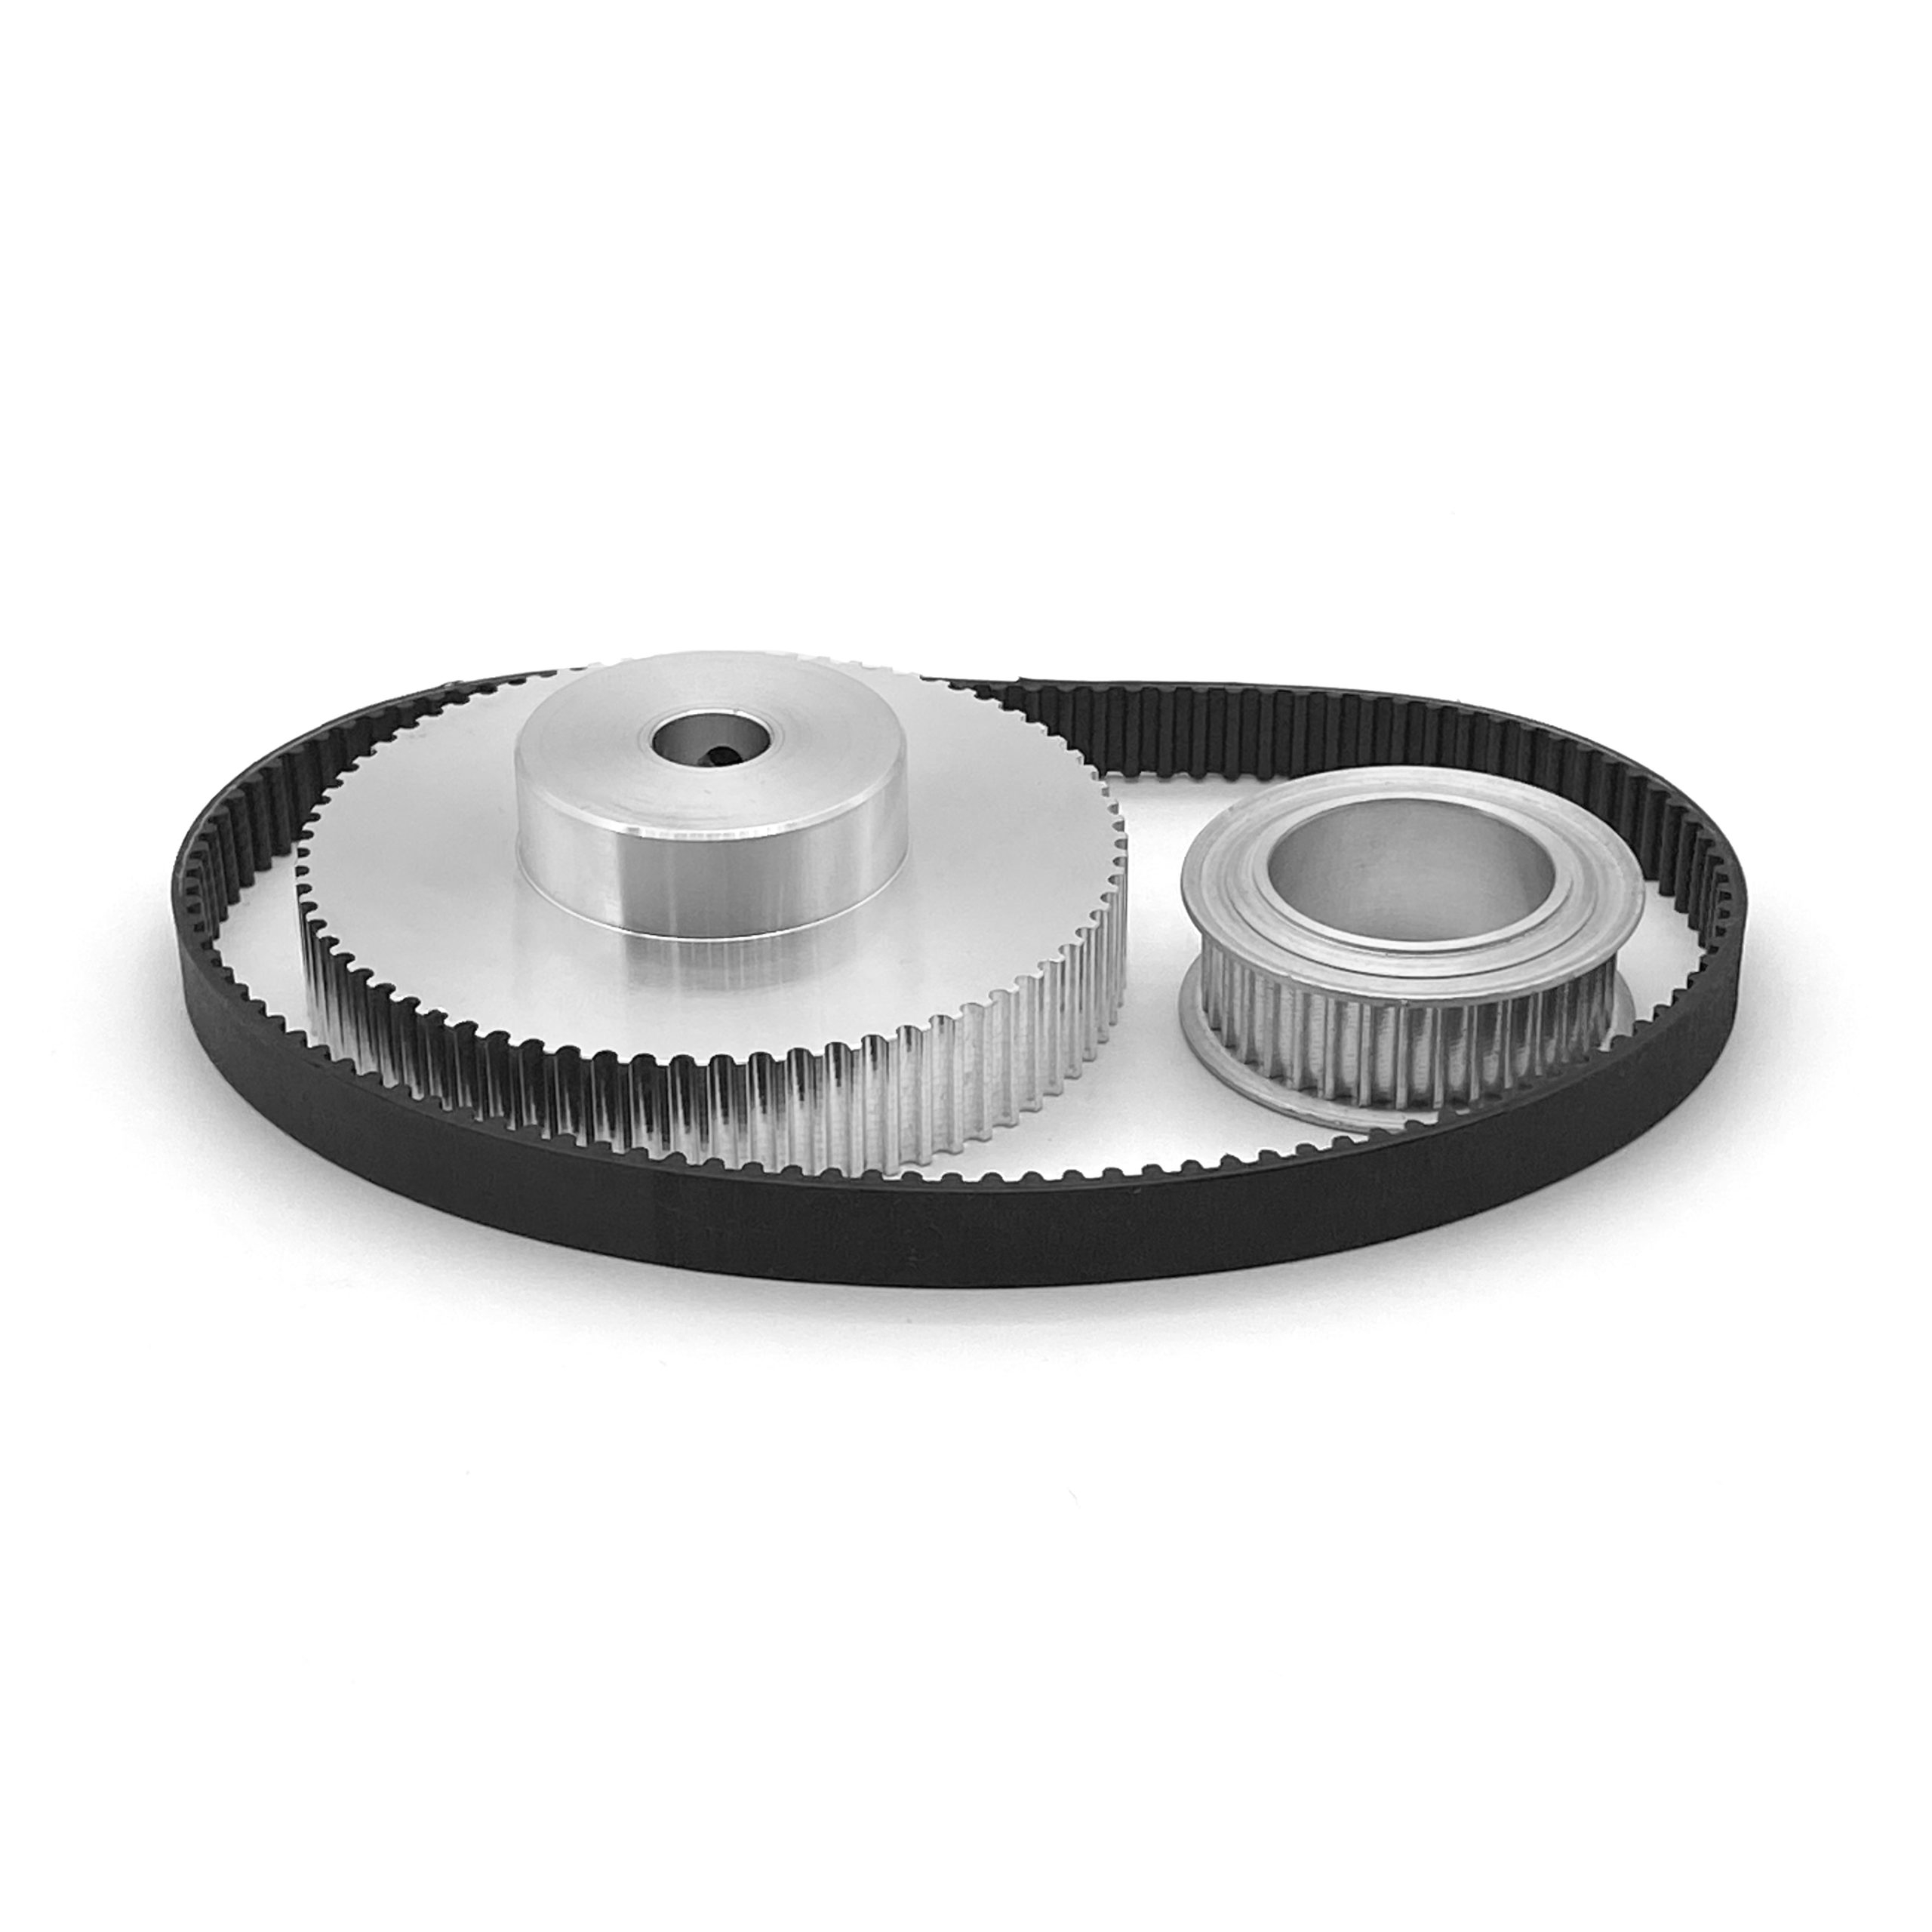 Haas Super Speed Mill Encoder Belt and Encoder Pulley Repair Kit